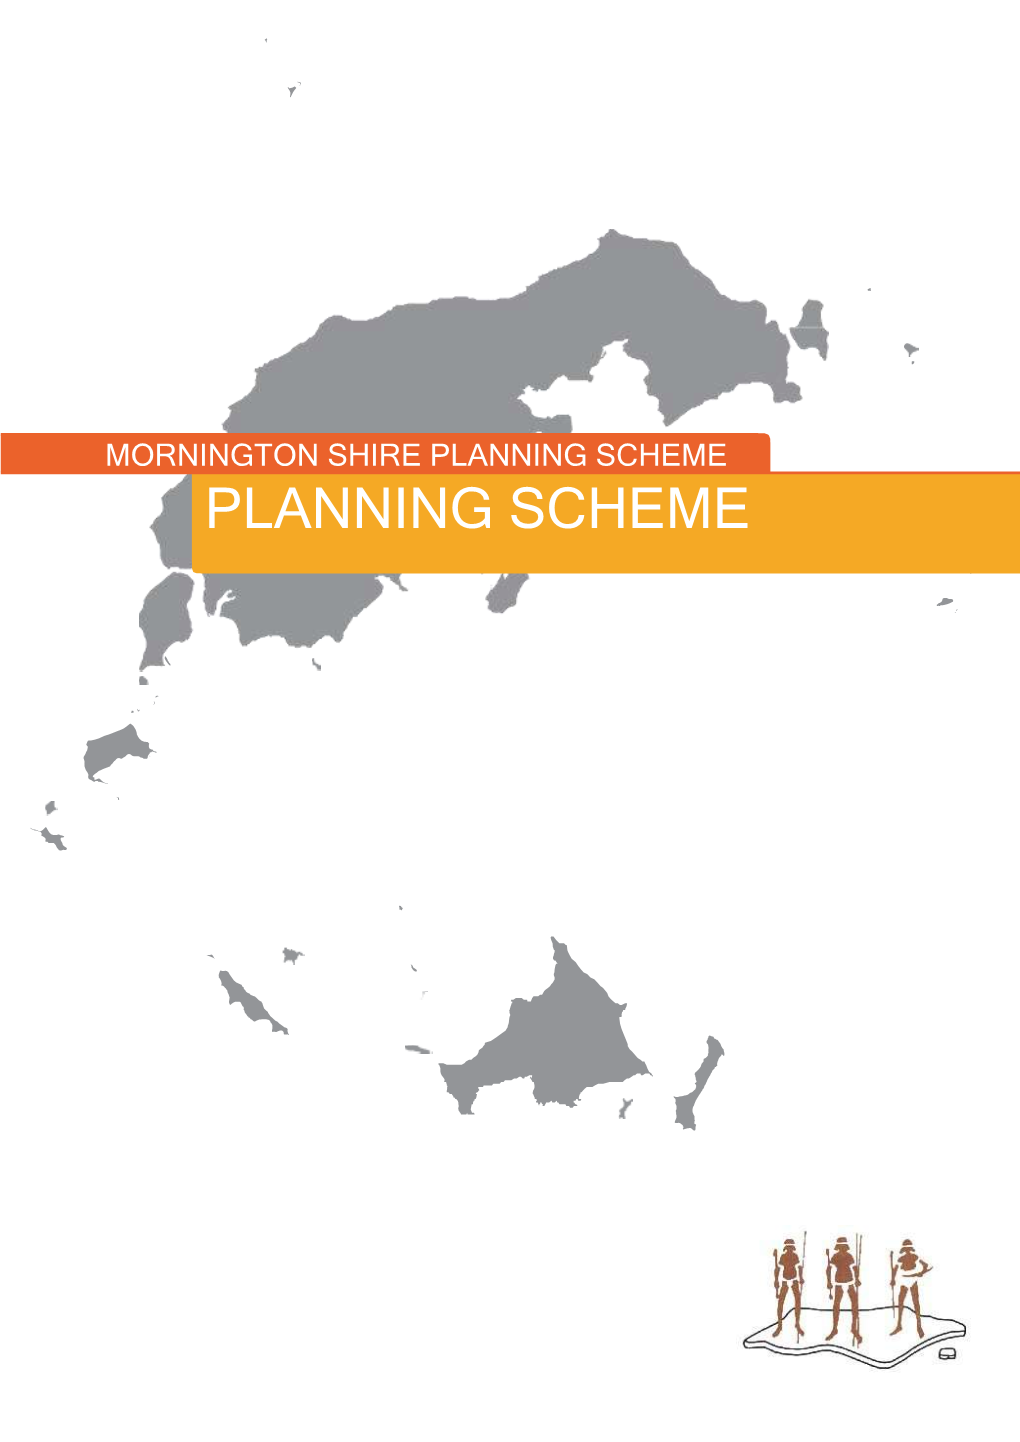 View Current Planning Scheme